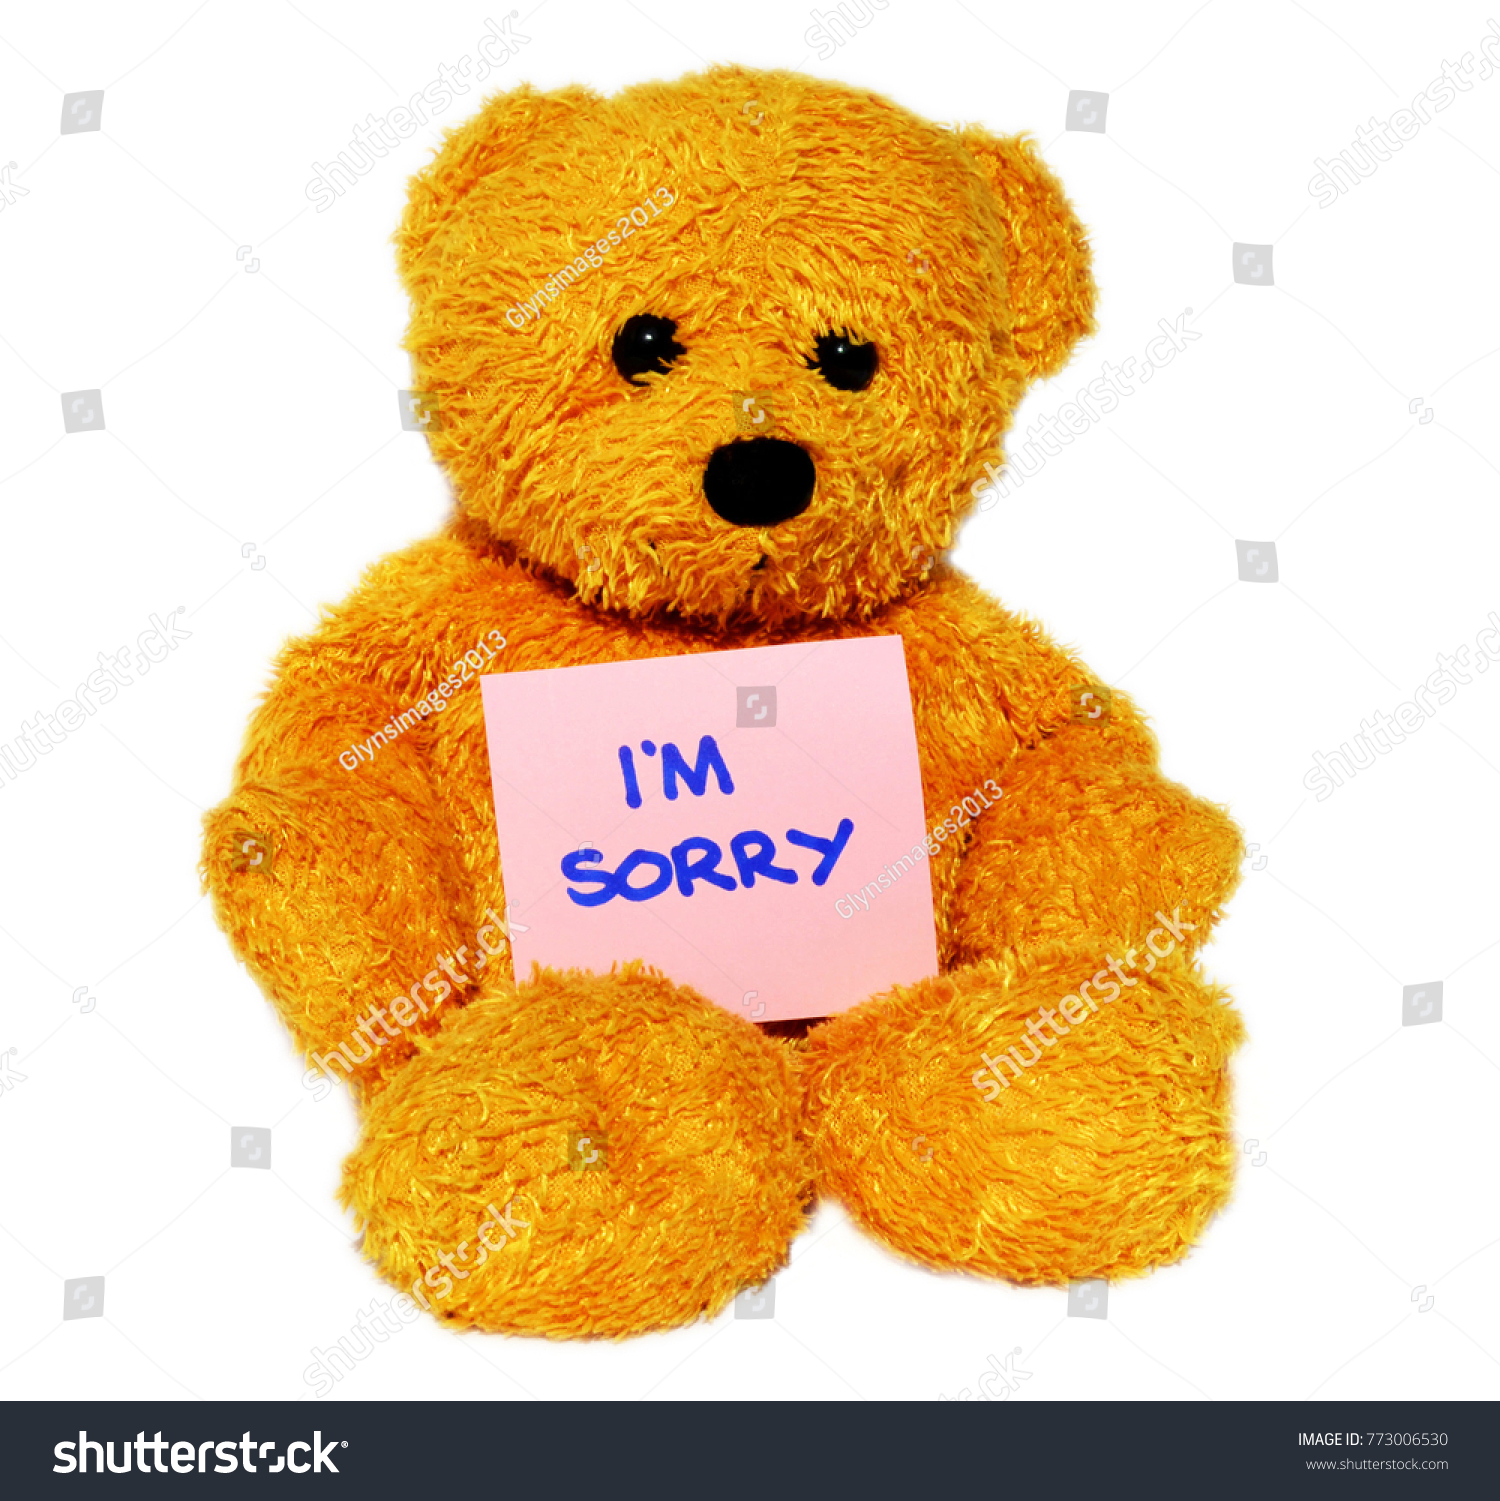 im sorry teddy bear